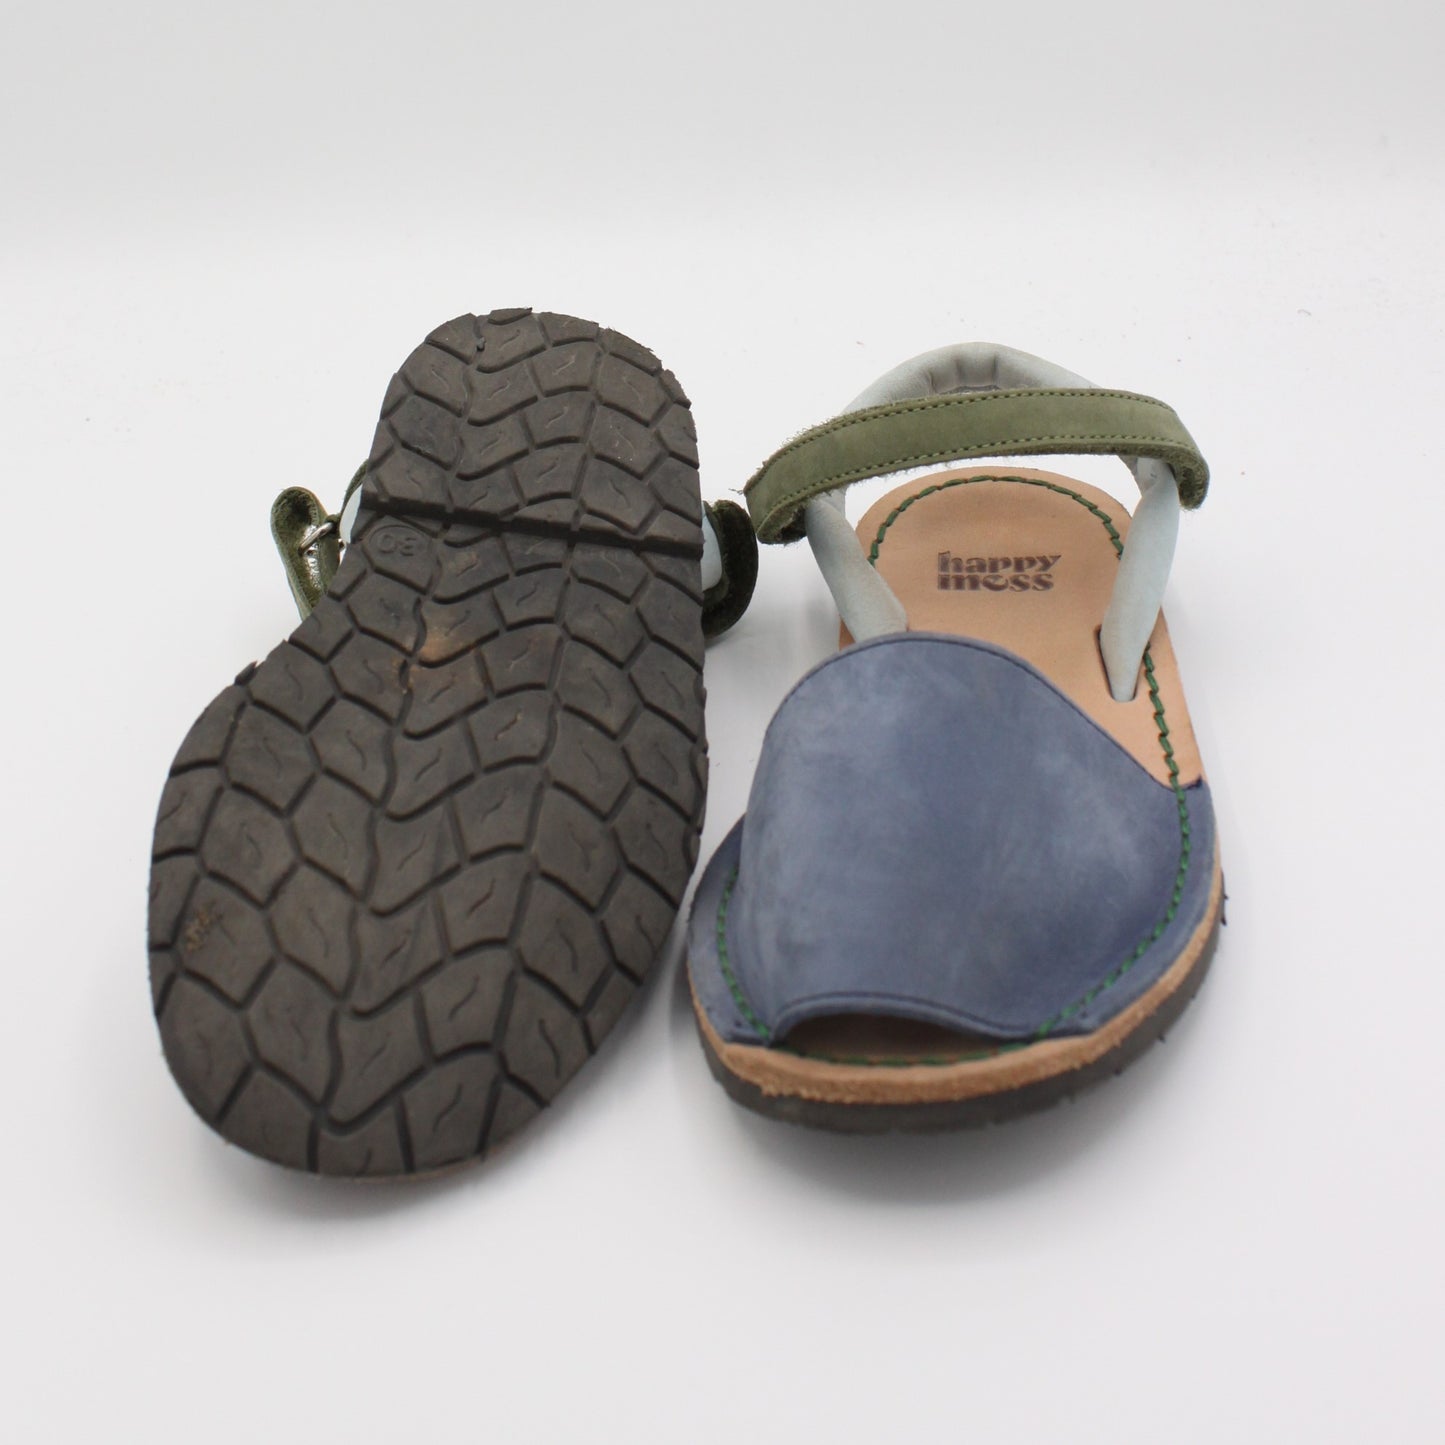 Pre-loved Sandals (EU30)